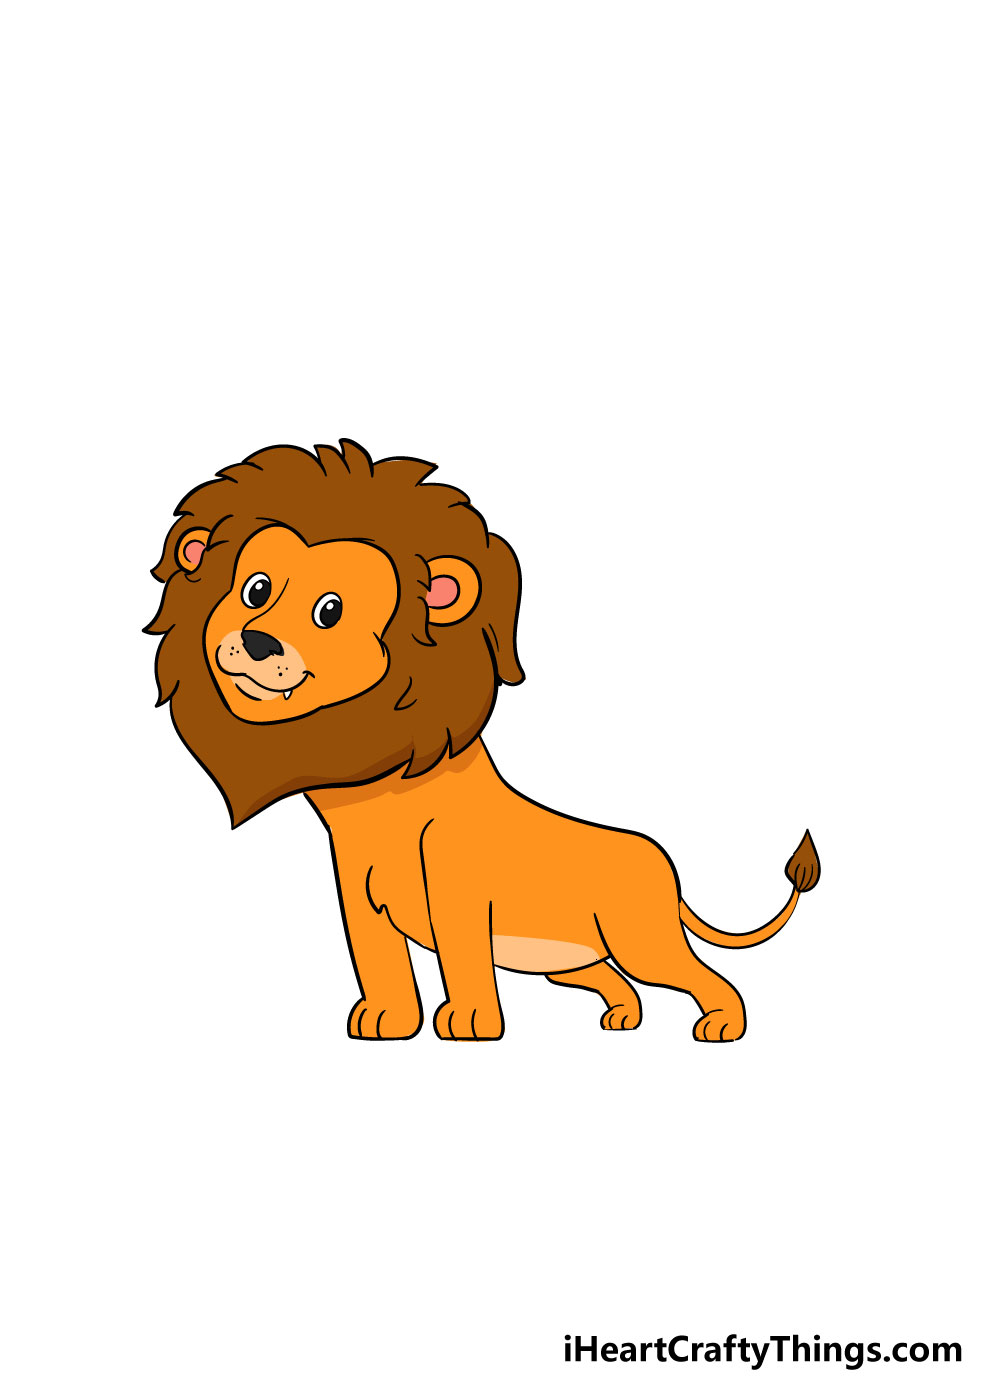 How to draw a lion 8 - Hướng dẫn cách vẽ con sư tử đơn giản với 8 bước cơ bản